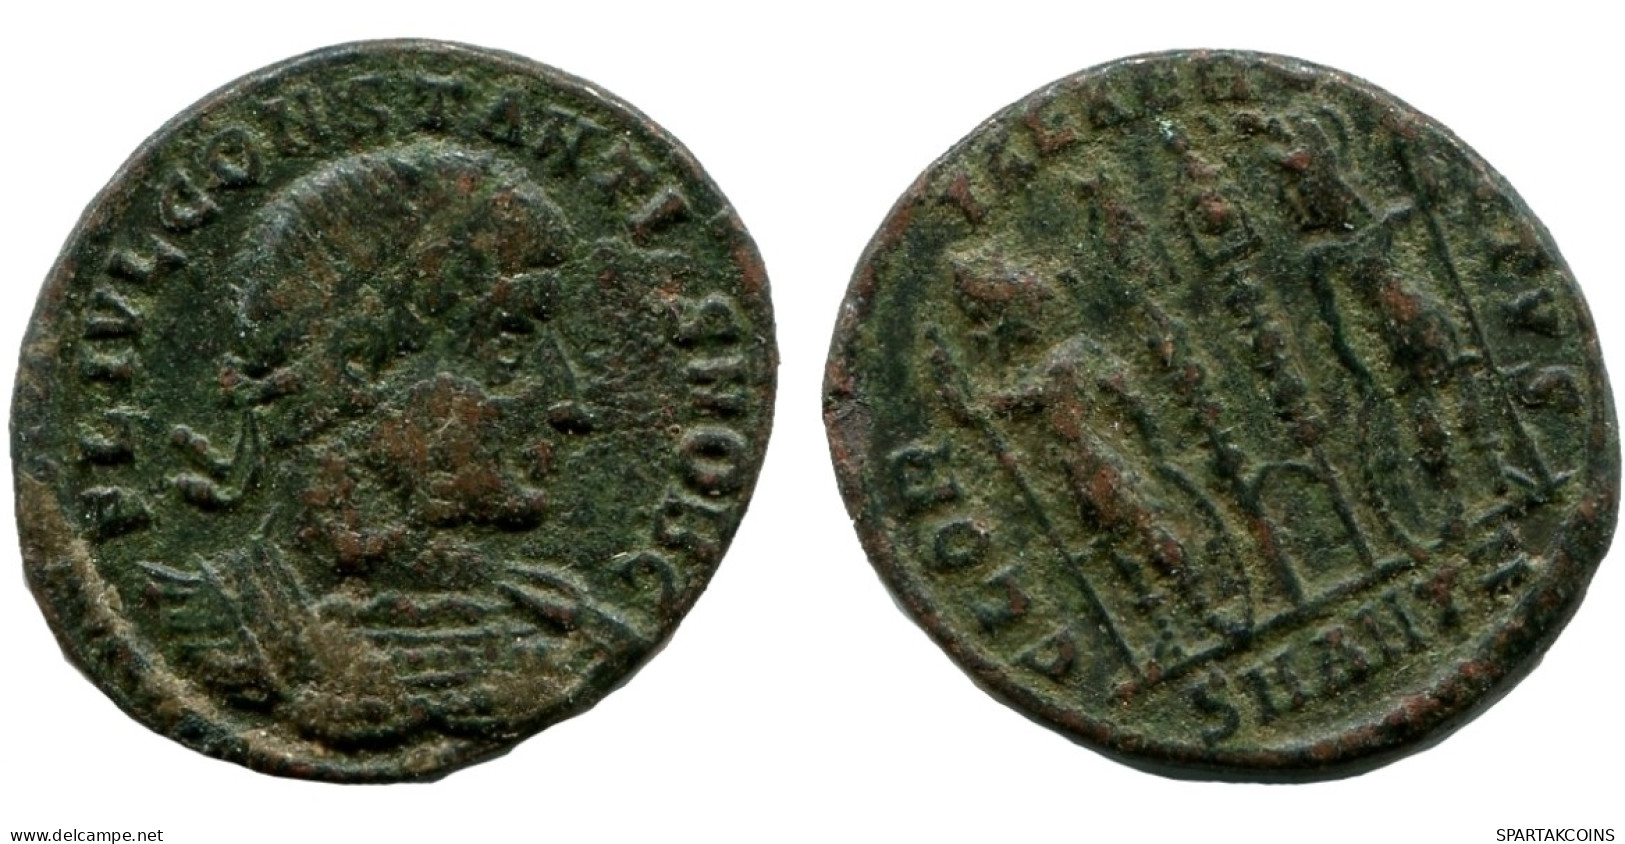 CONSTANTINE I Authentische Antike RÖMISCHEN KAISERZEIT Münze #ANC12230.12.D.A - Der Christlischen Kaiser (307 / 363)